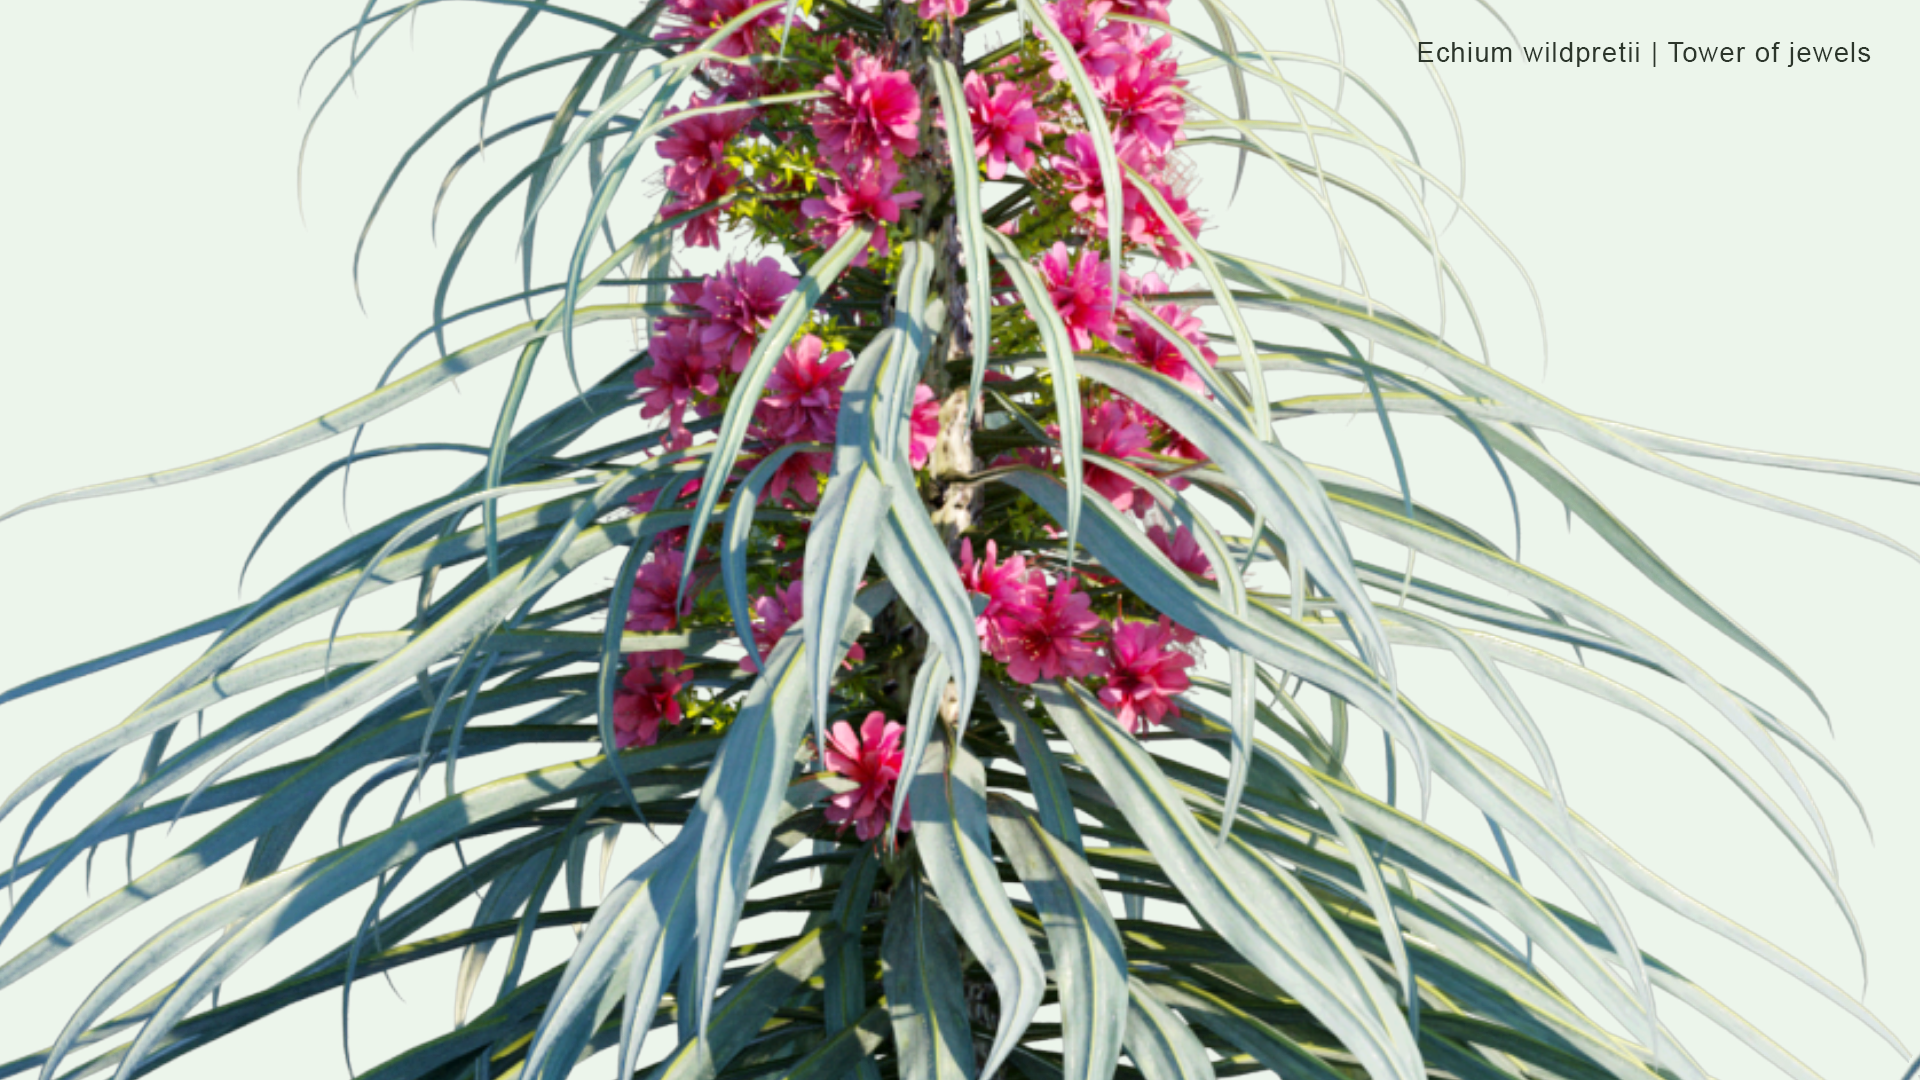 2D Echium Wildpretii - Tower of Jewels, Red Bugloss, Tenerife Bugloss